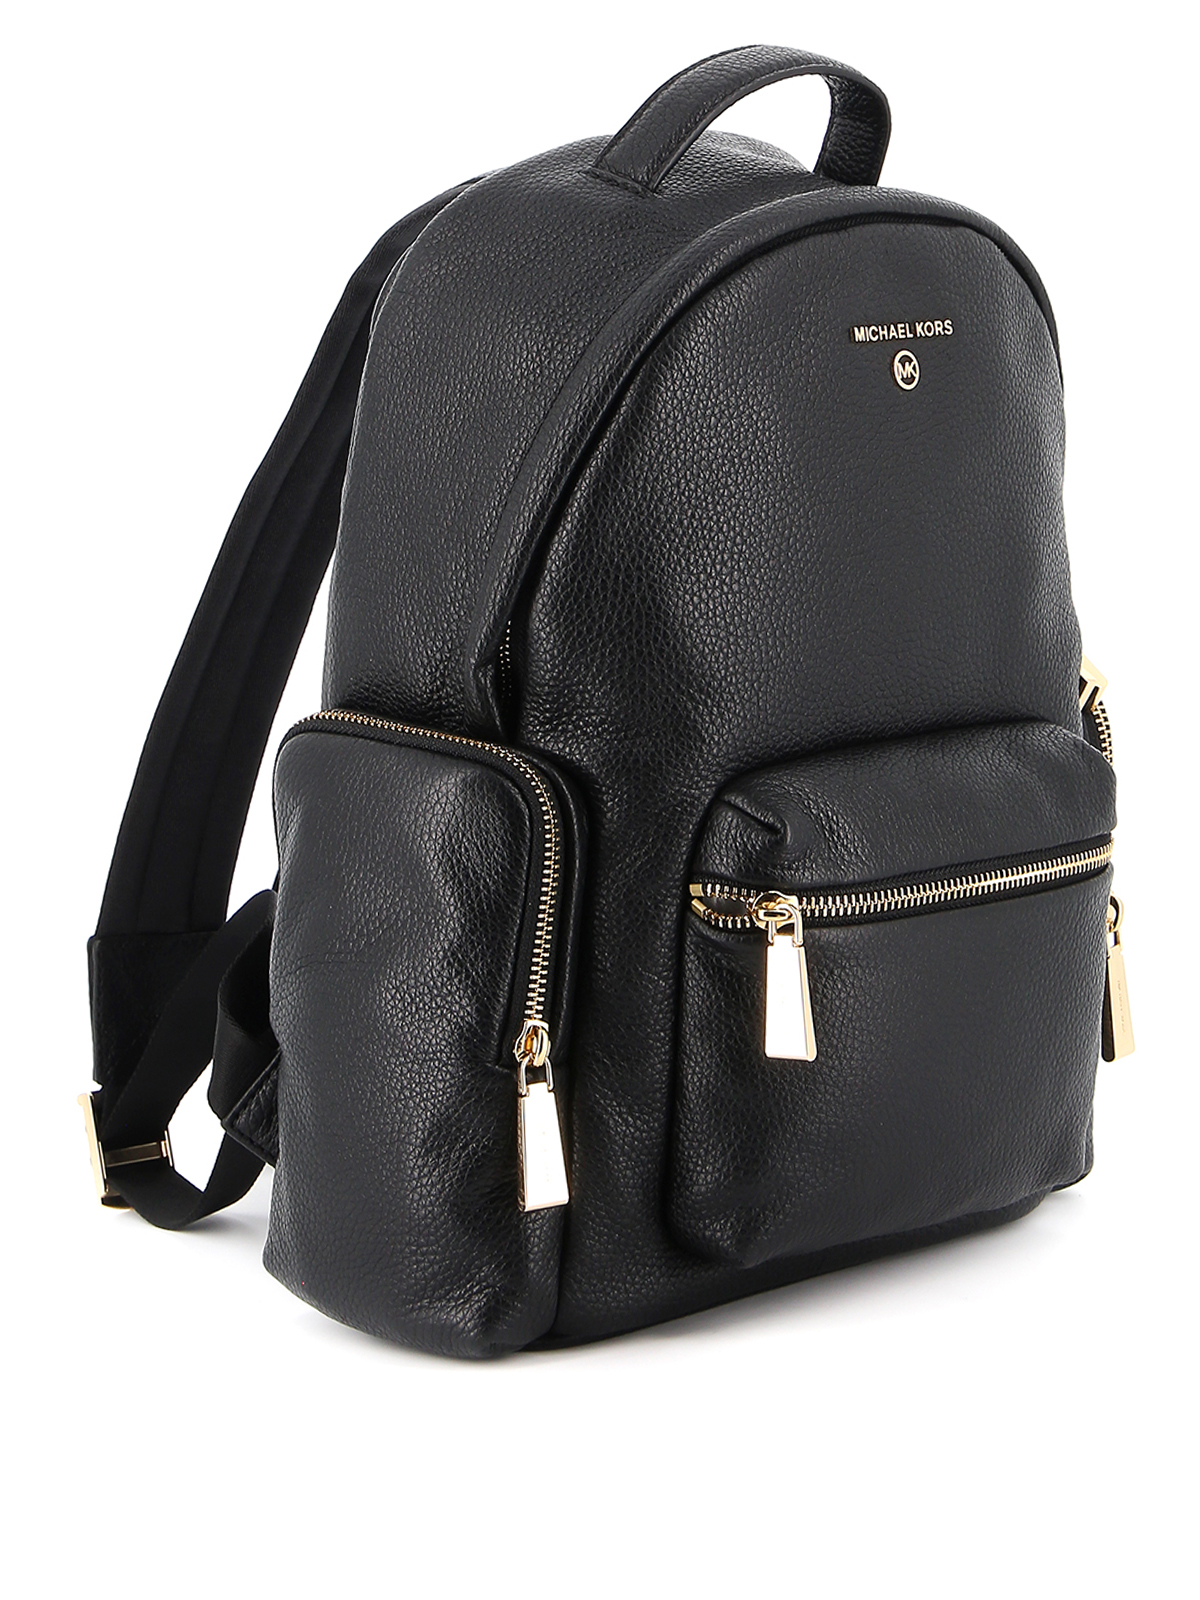 Backpacks Michael Kors - Nicks small backpack - 30S0G1NB1L001 